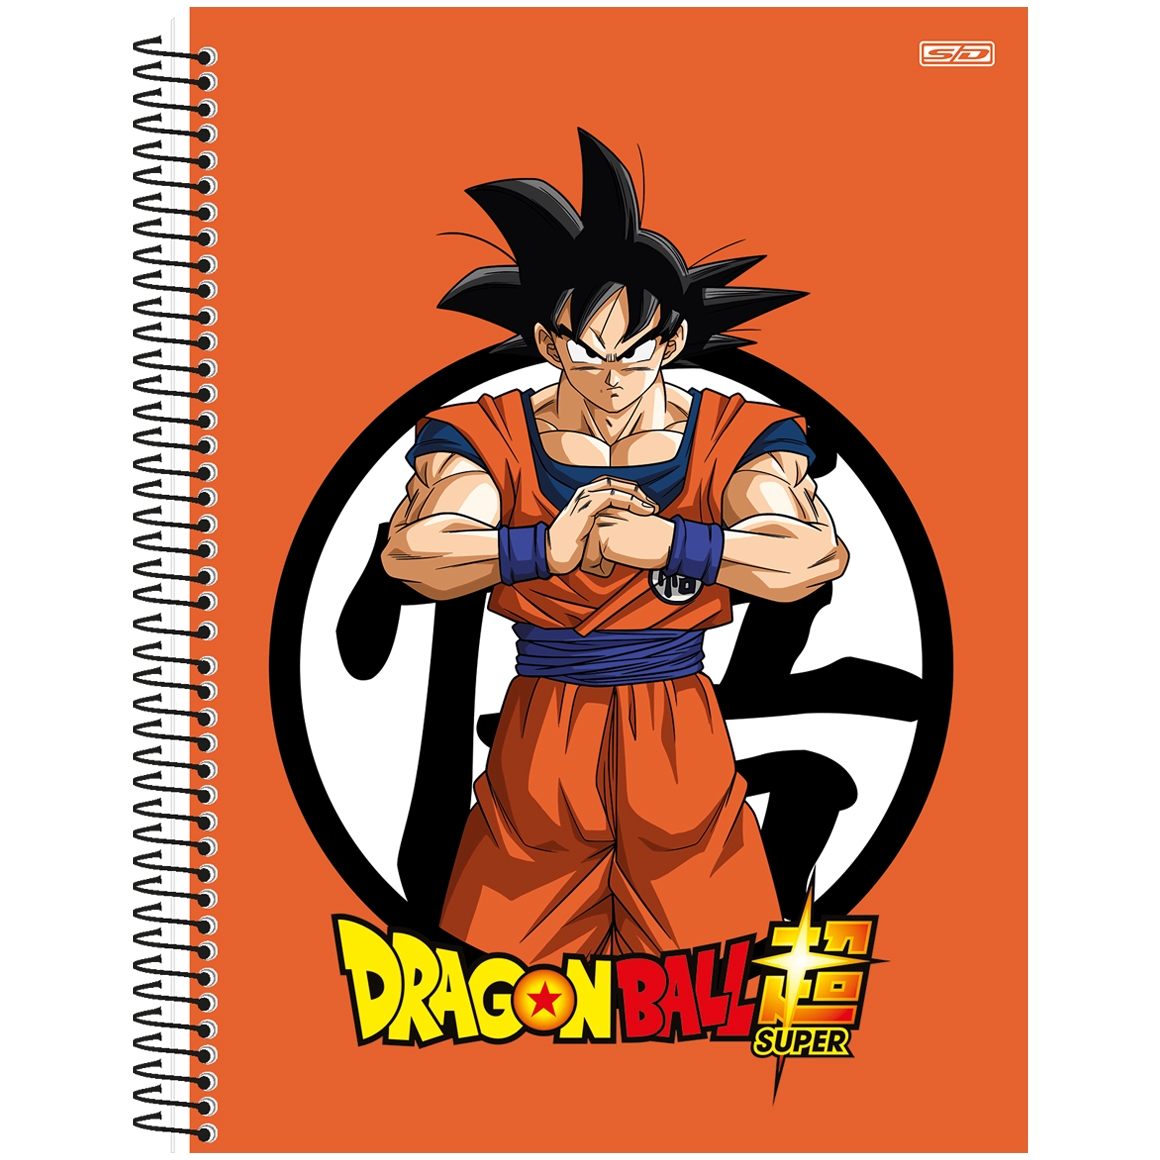 Caderno De Desenho Dragon Ball Super 60 Folhas Cartografia - Tem